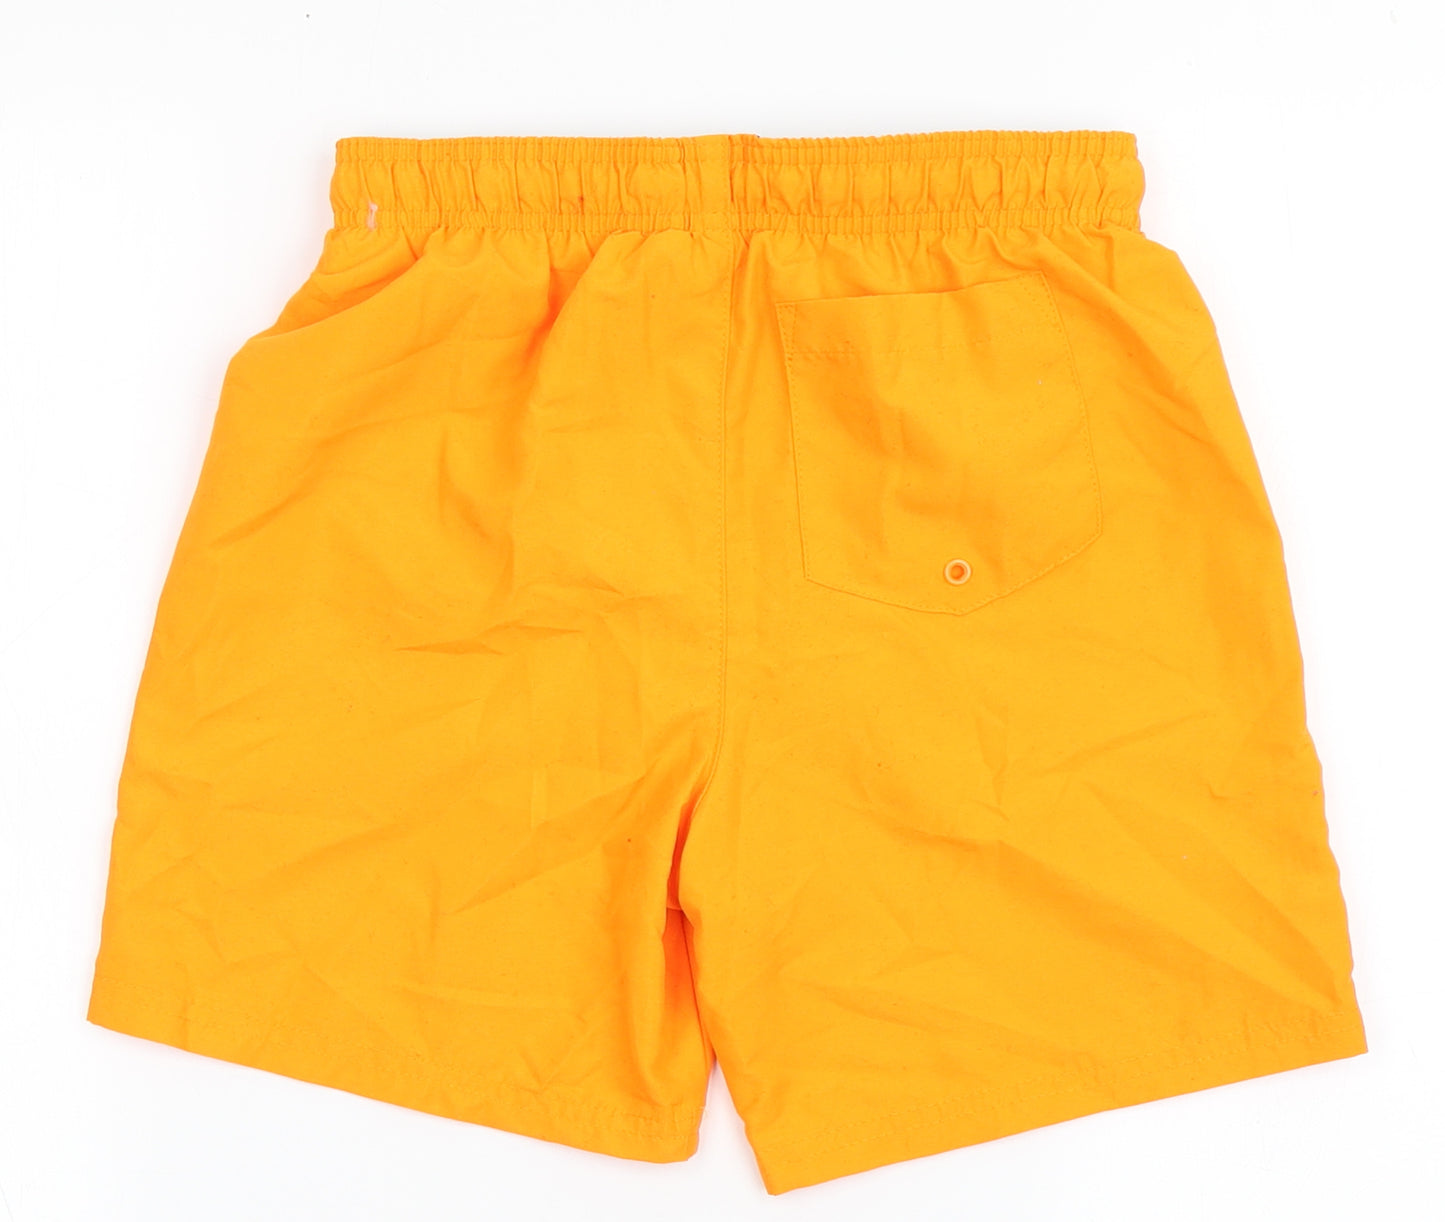 F&F Boys Orange  Polyester Bermuda Shorts Size 9-10 Years  Regular Drawstring - Board Shorts